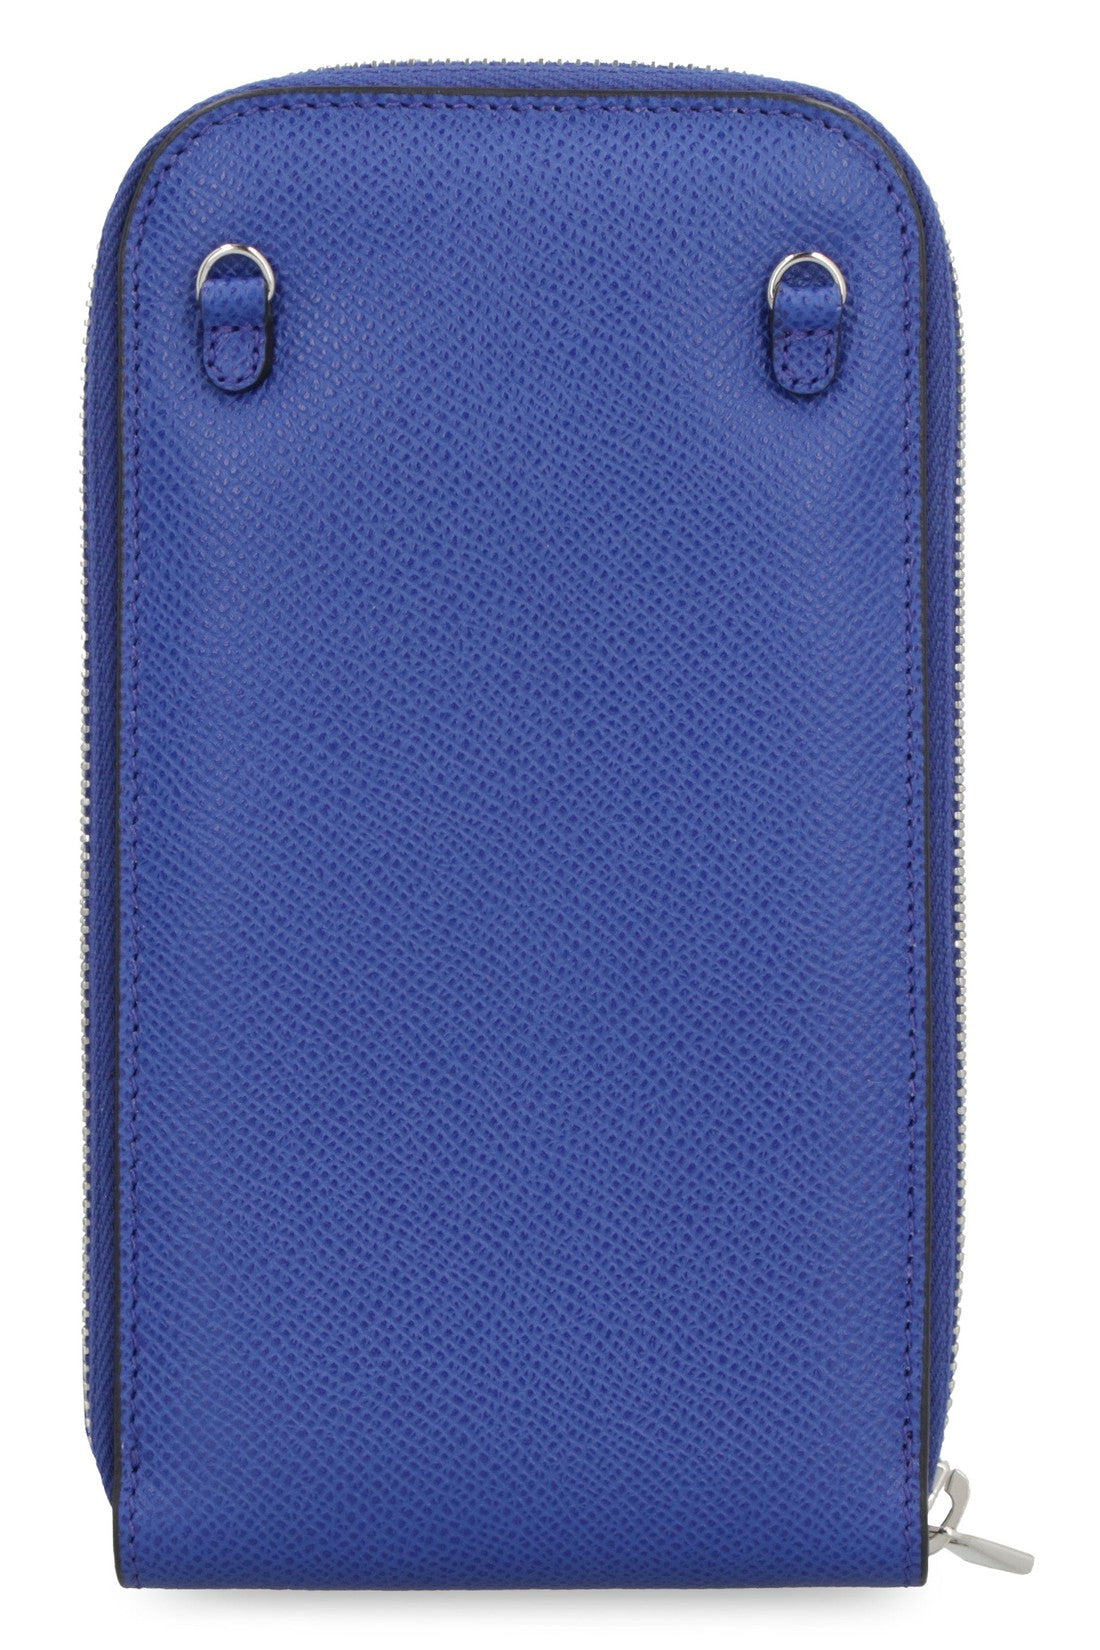 FERRAGAMO-OUTLET-SALE-Gancini leather mobile phone case-ARCHIVIST